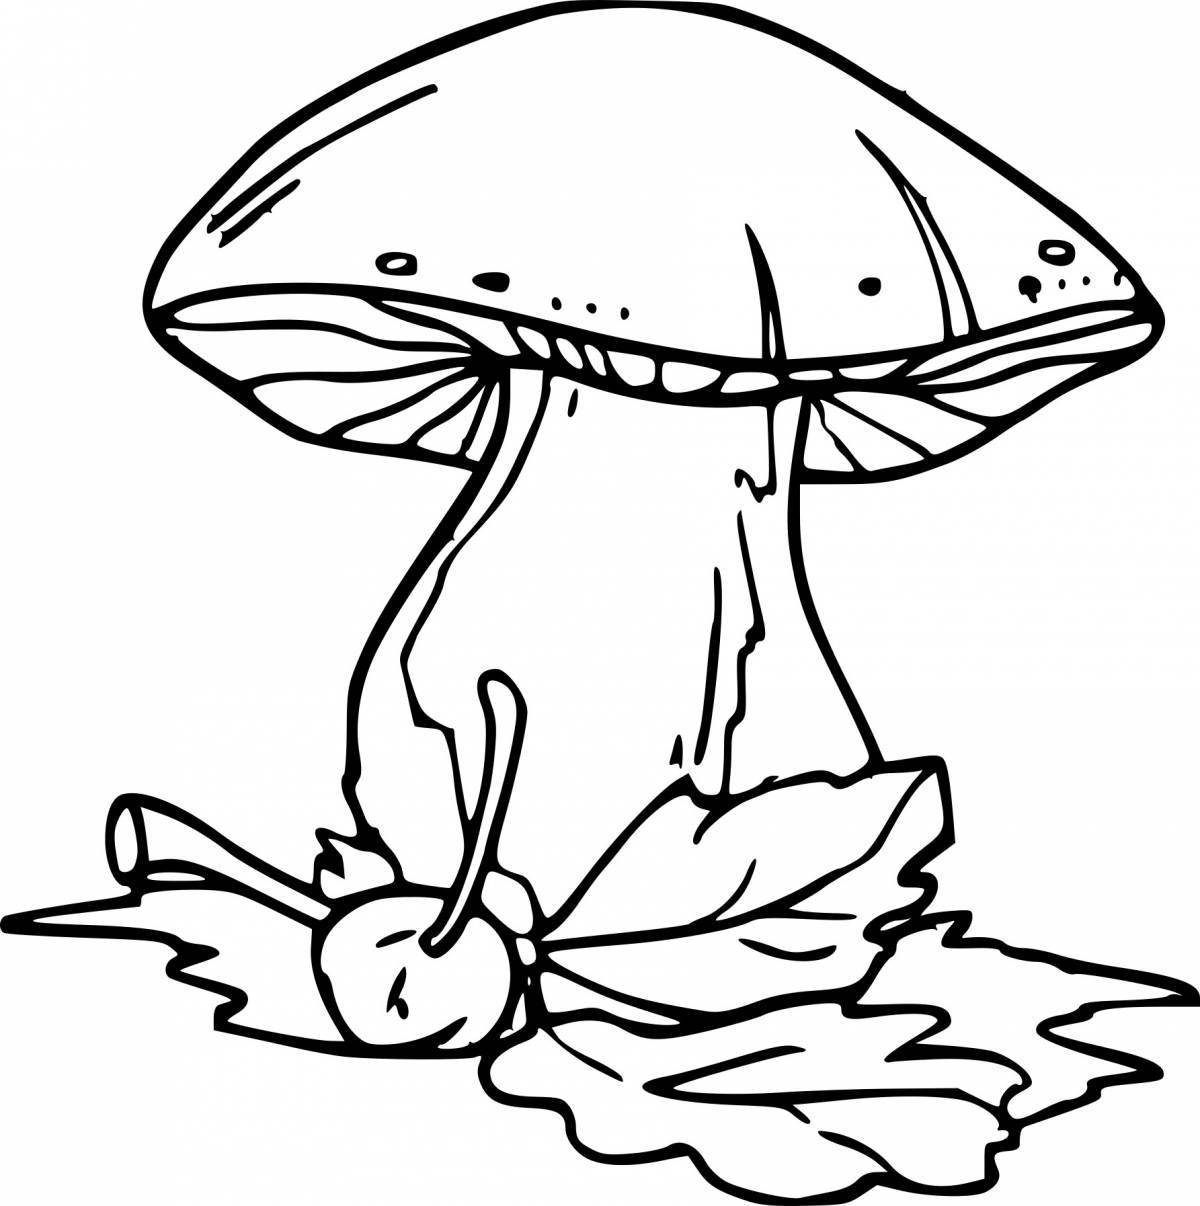 Веселая раскраска с грибами для детей 3-4 лет